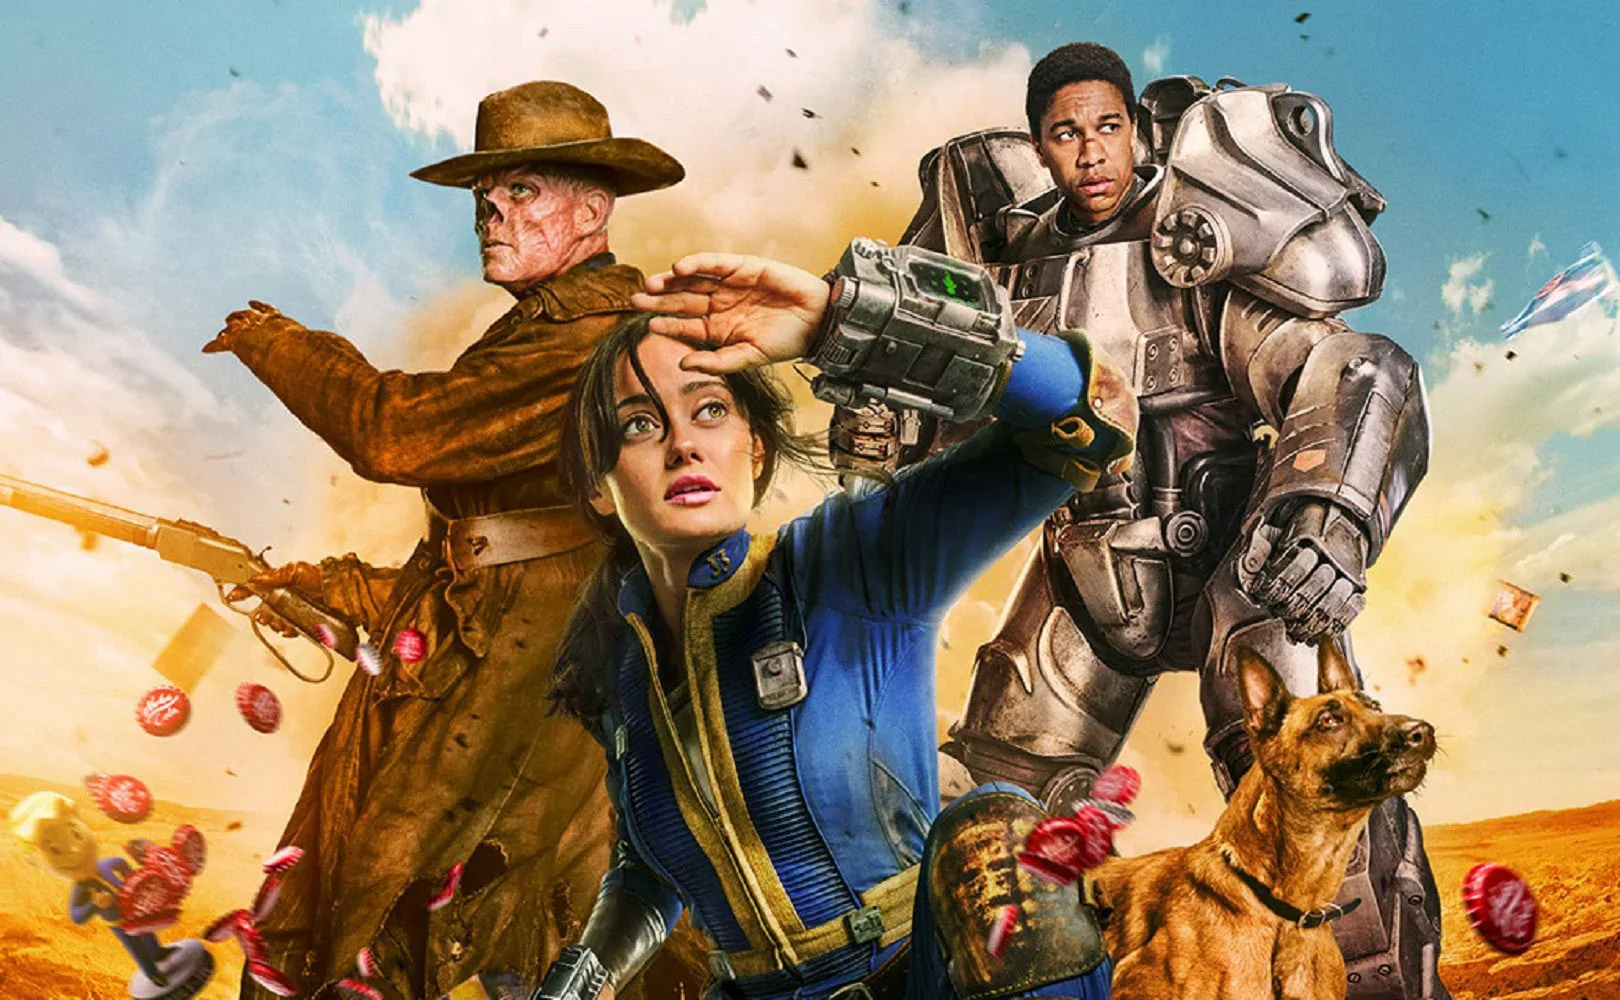 Nowy film A24 oraz adaptacja Fallout! Co zobaczymy w tym tygodniu w kinach na VOD?